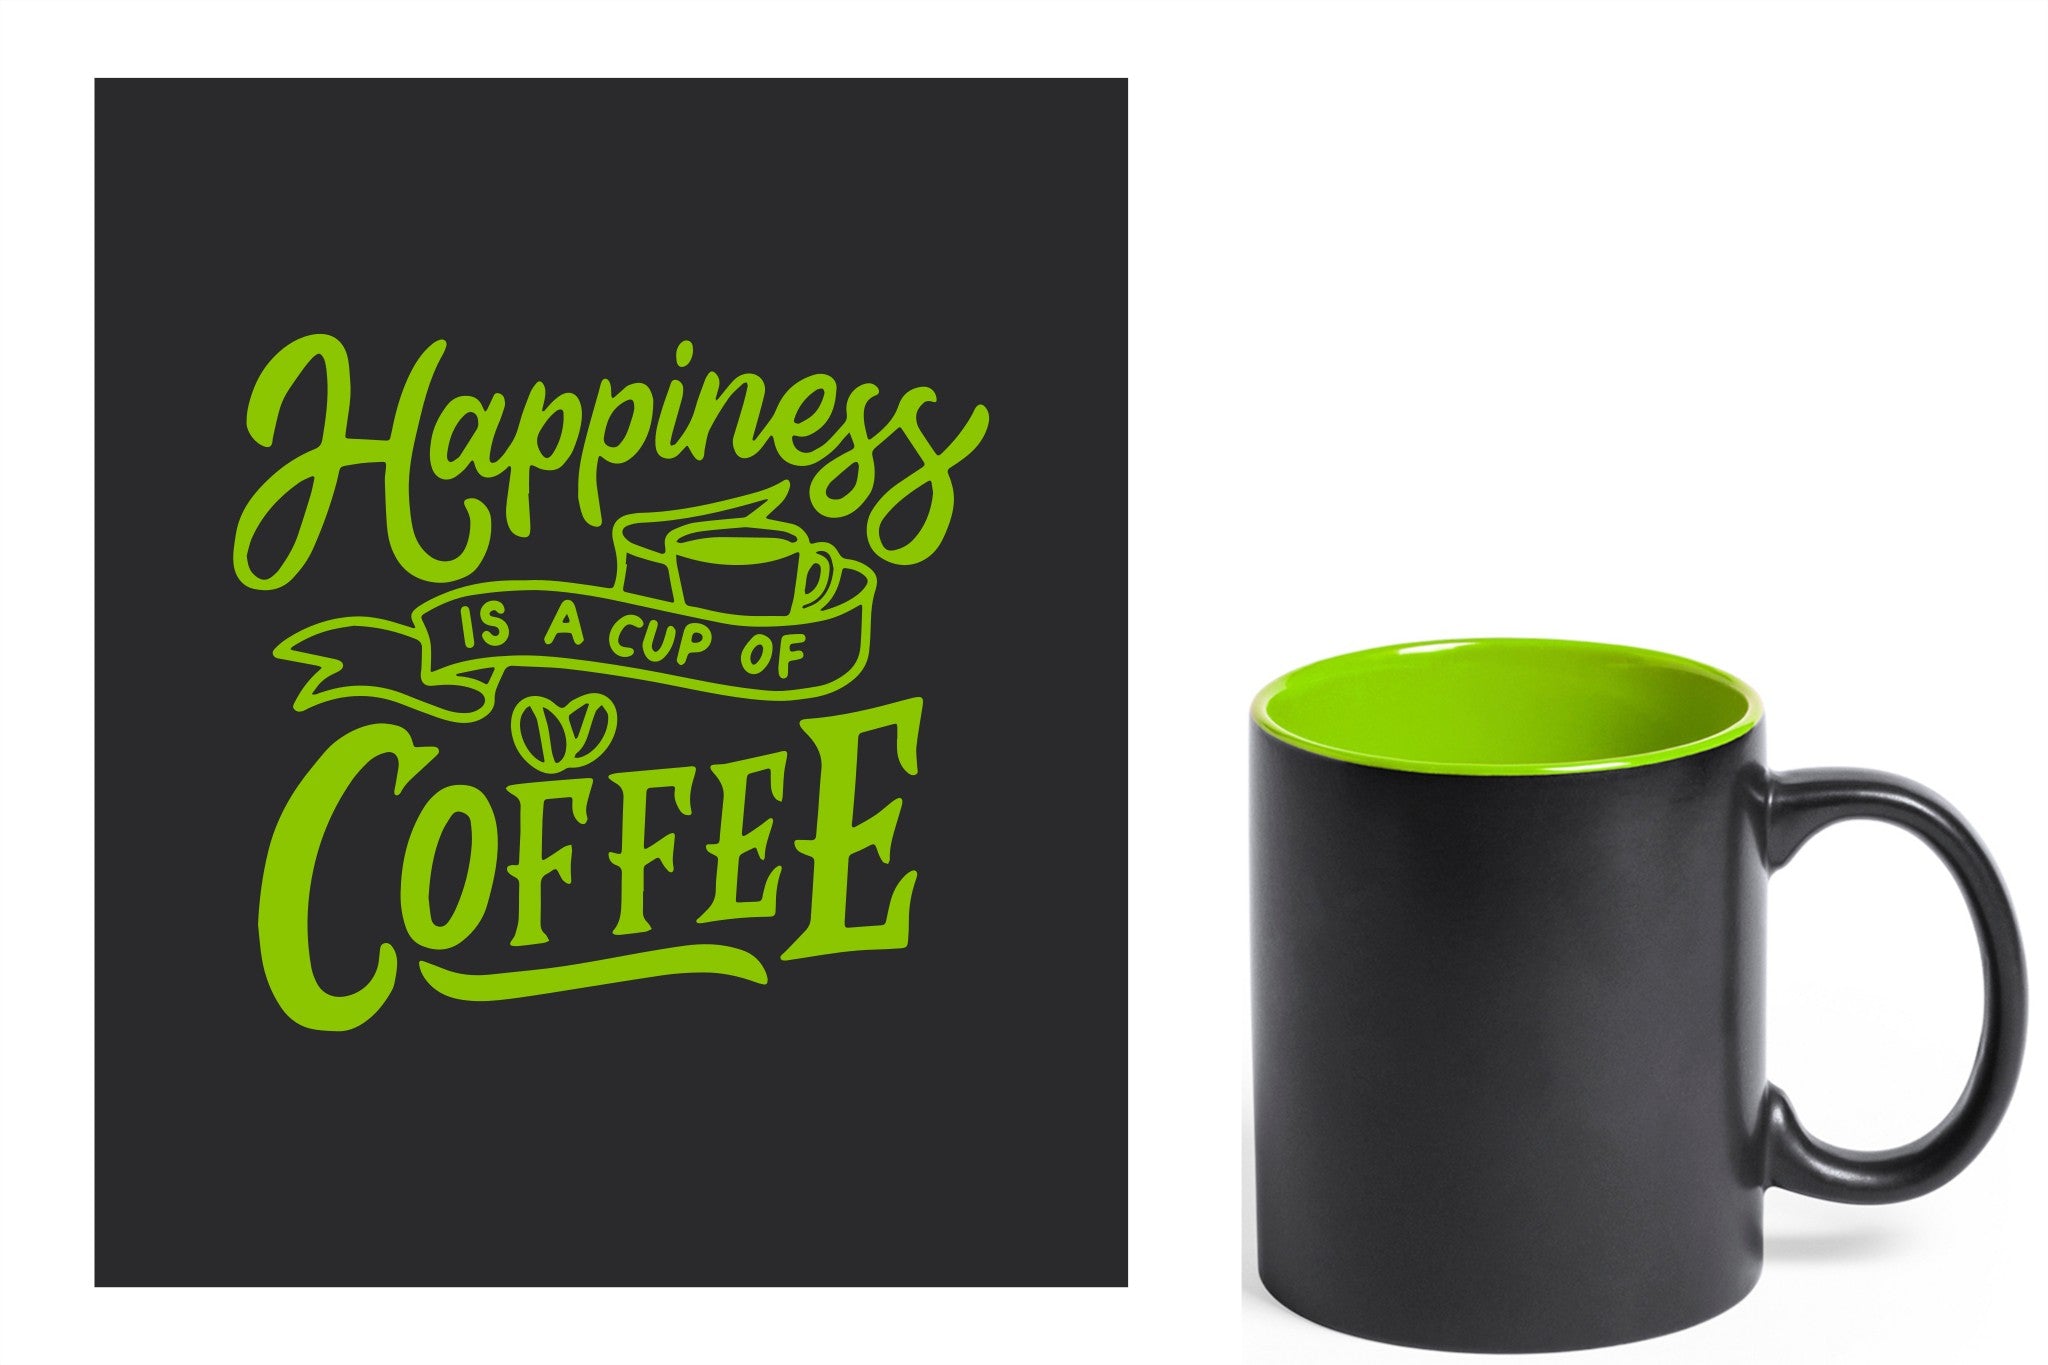 zwarte keramische mok met groene gravure  'Happiness is a cup of coffee'.